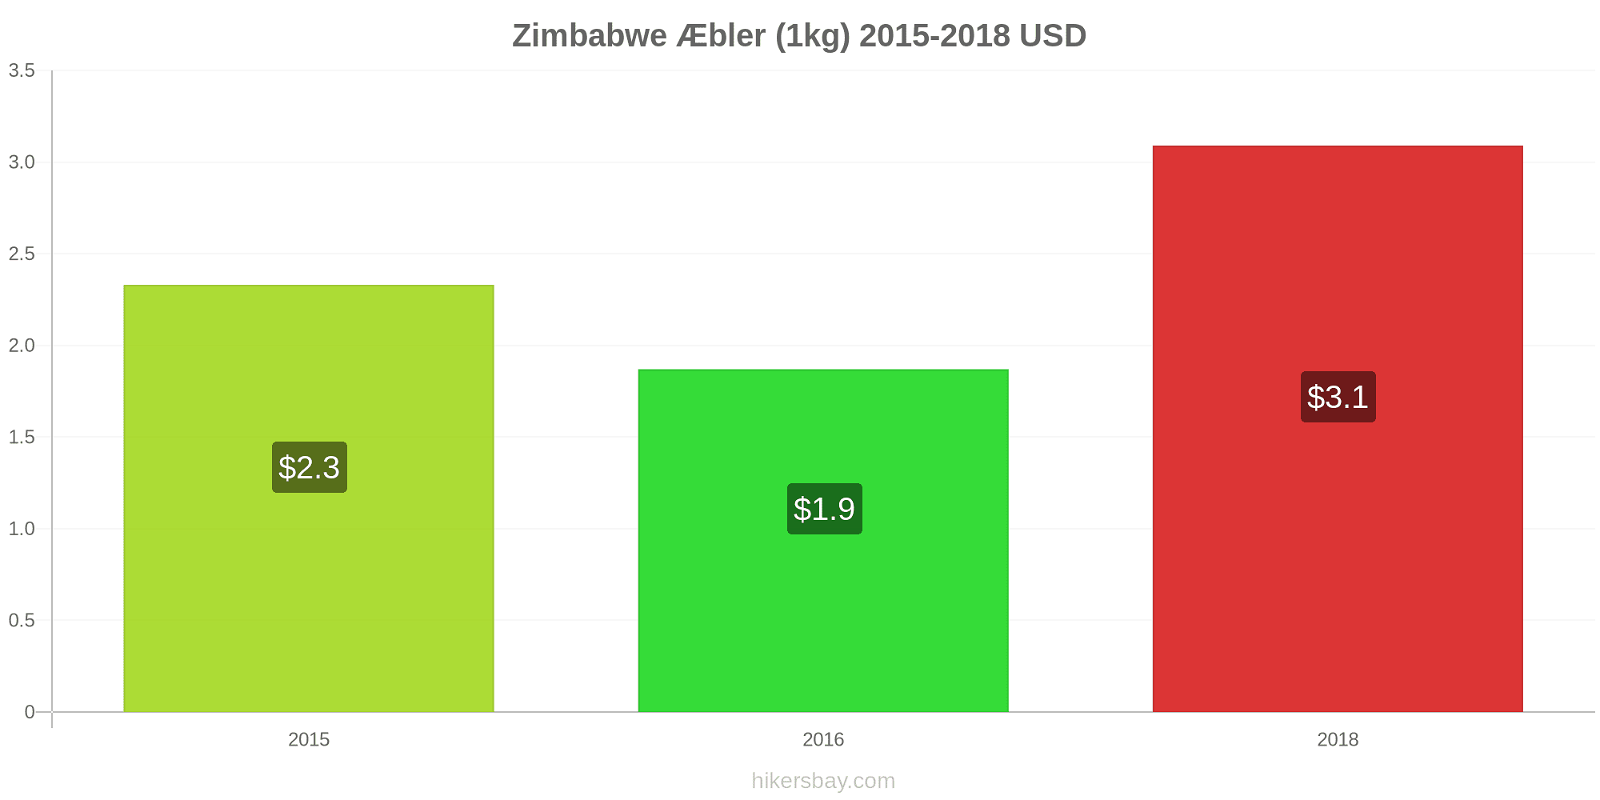 Zimbabwe prisændringer Æbler (1kg) hikersbay.com